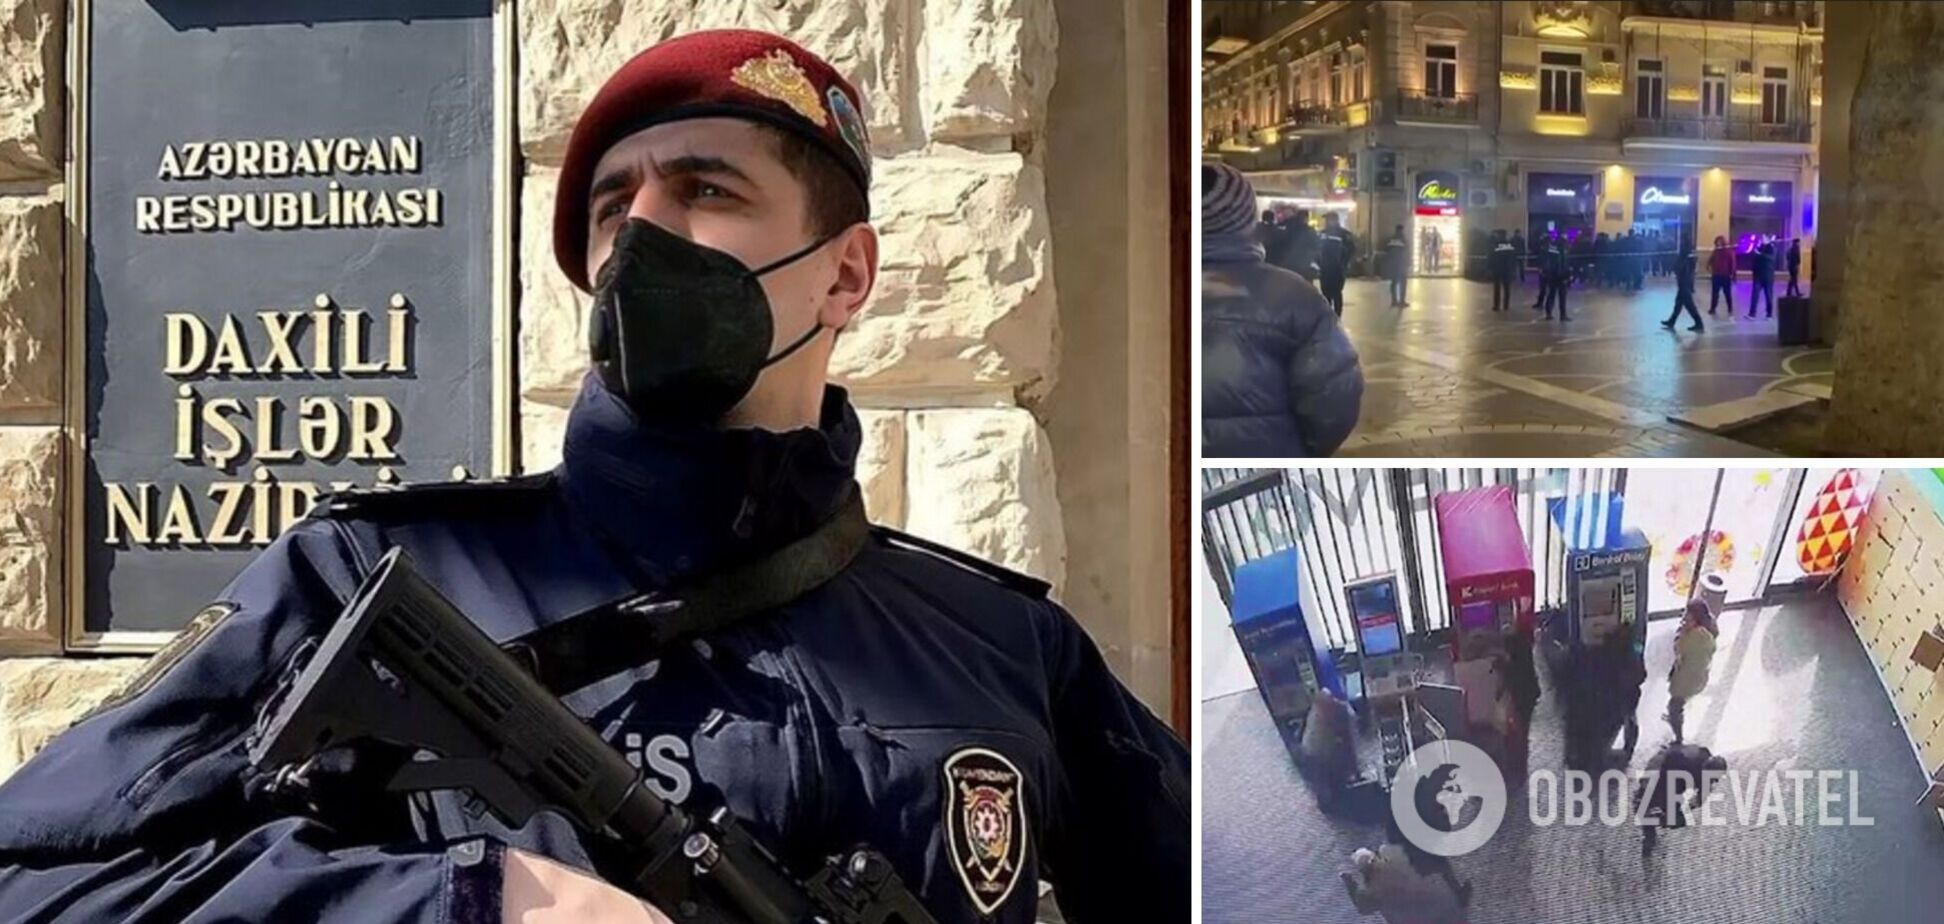 У Баку сталася стрілянина у гіпермаркеті, терористів знешкоджено. Відео